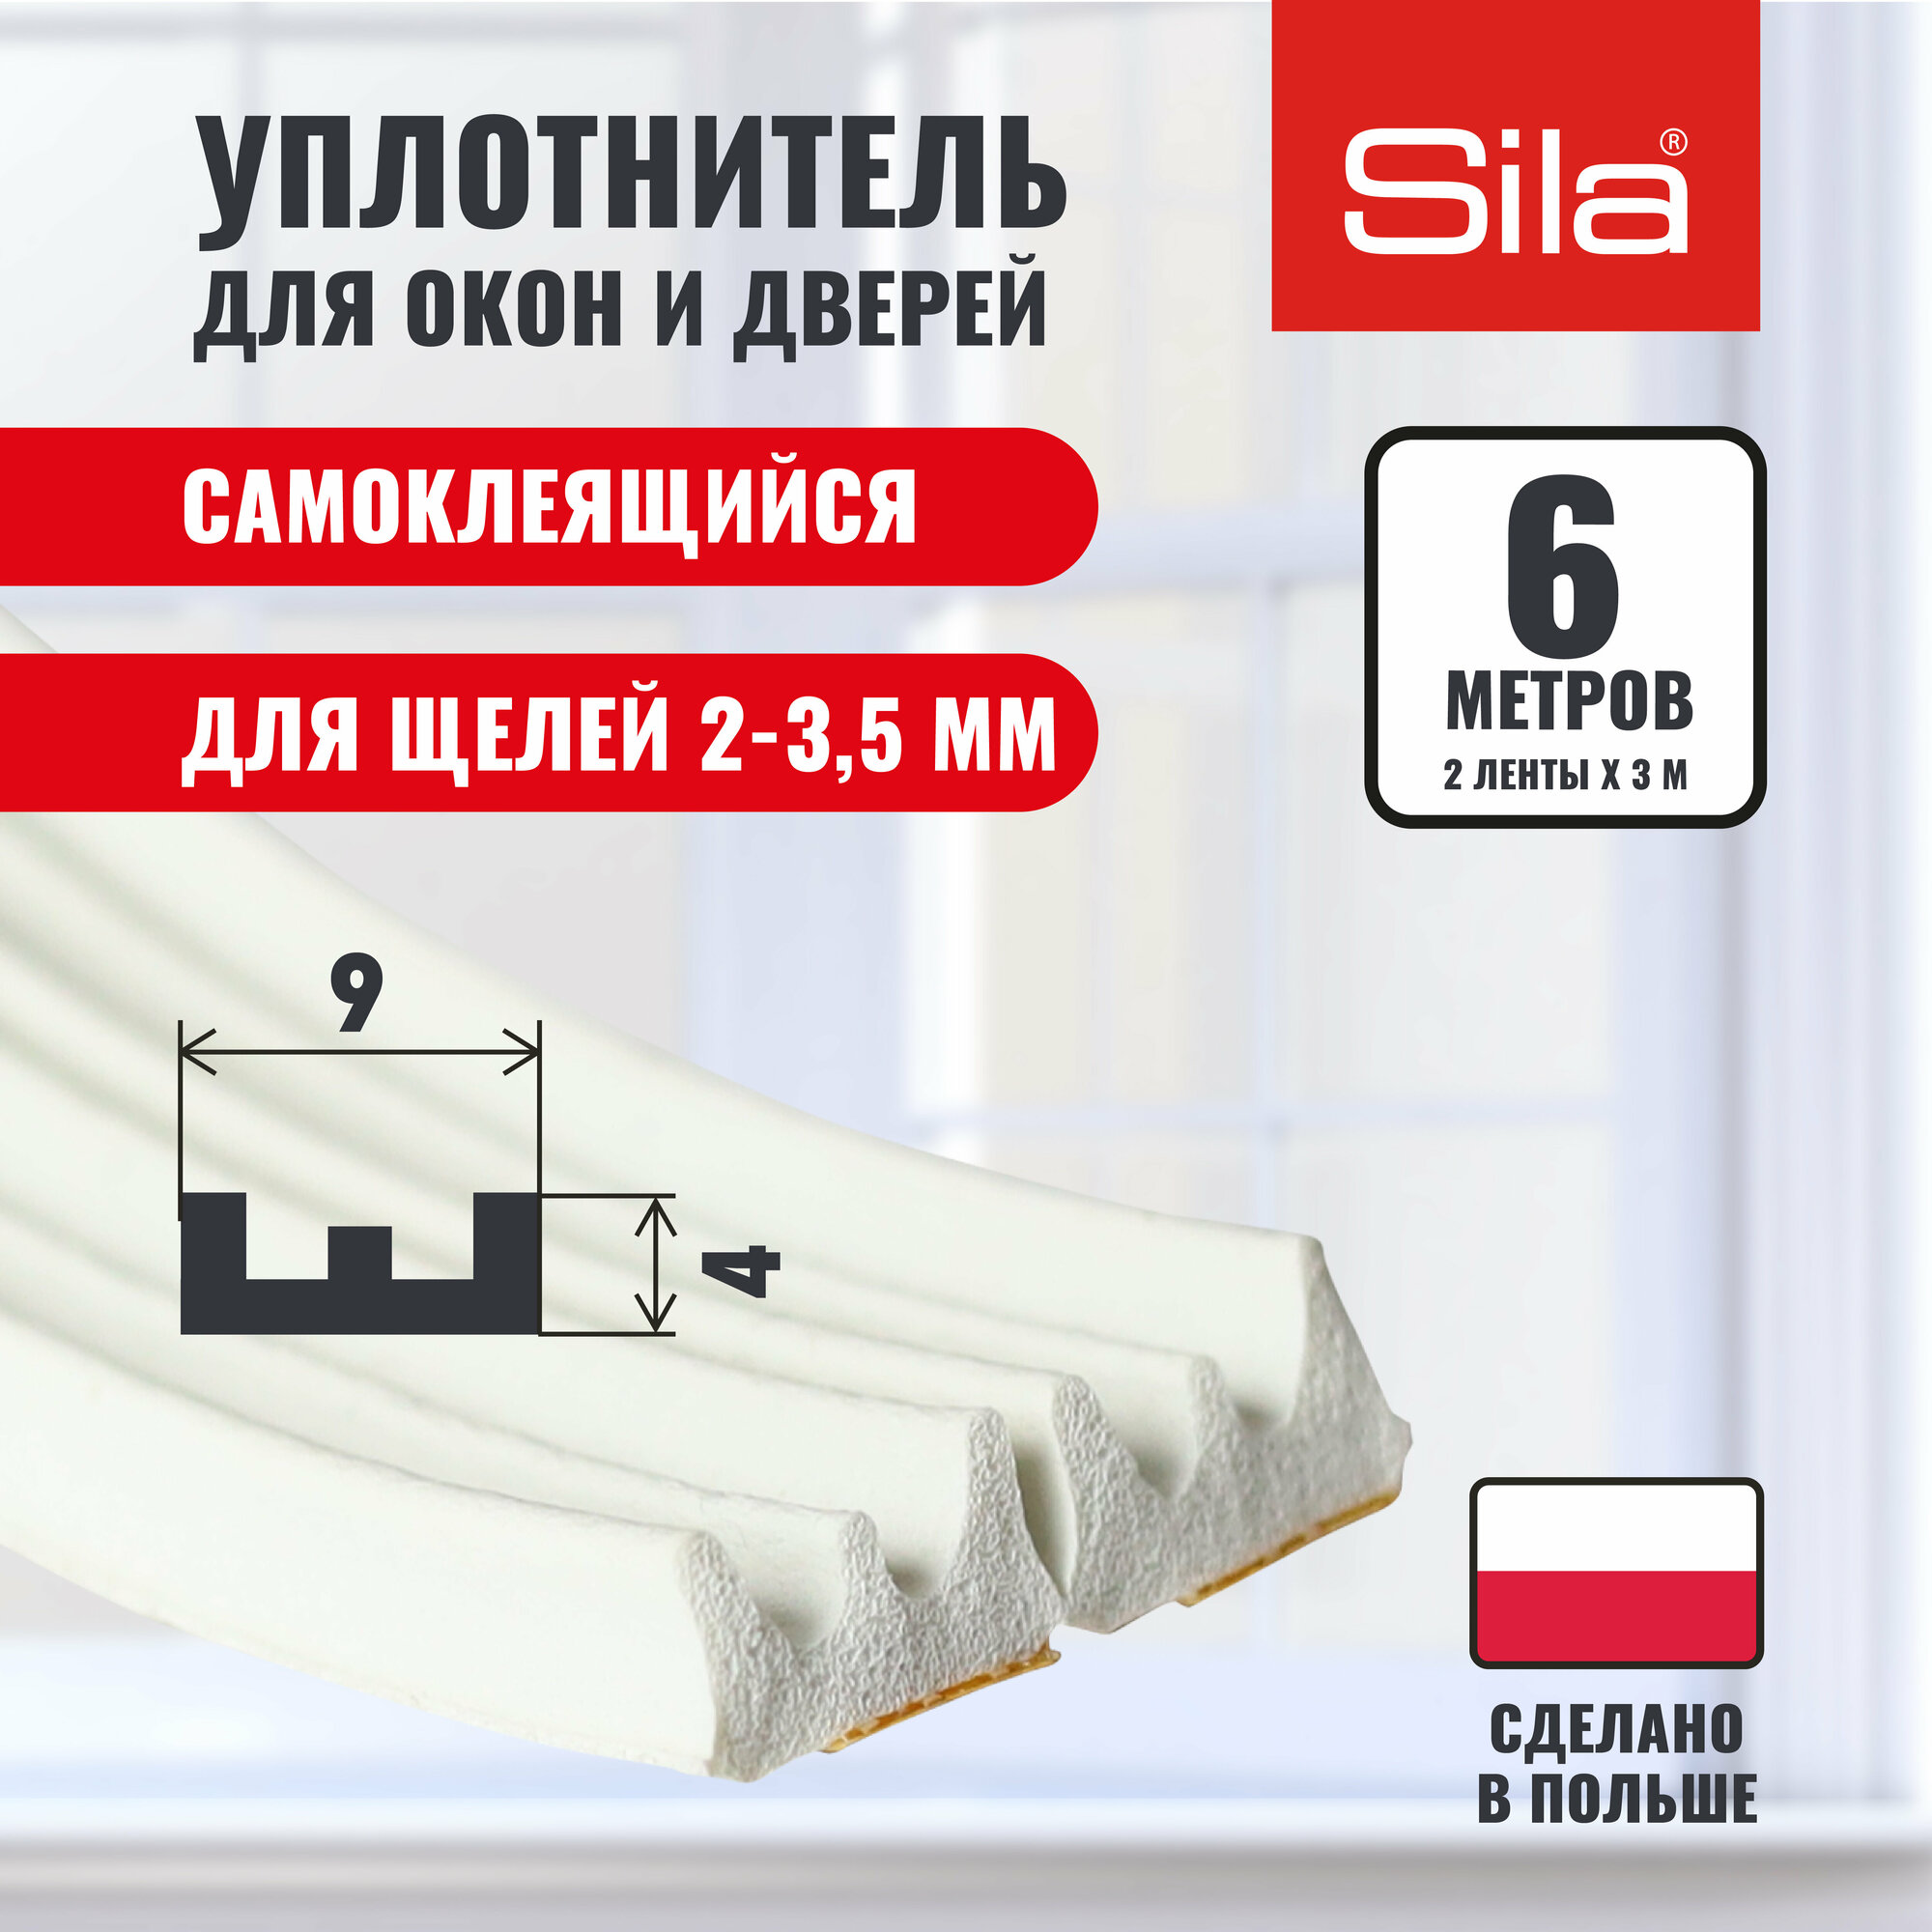 Уплотнитель для окон и дверей SILA E-профиль, 9х4мм, 6 метров (2х3м), белый, самоклеящийся SILAEW6